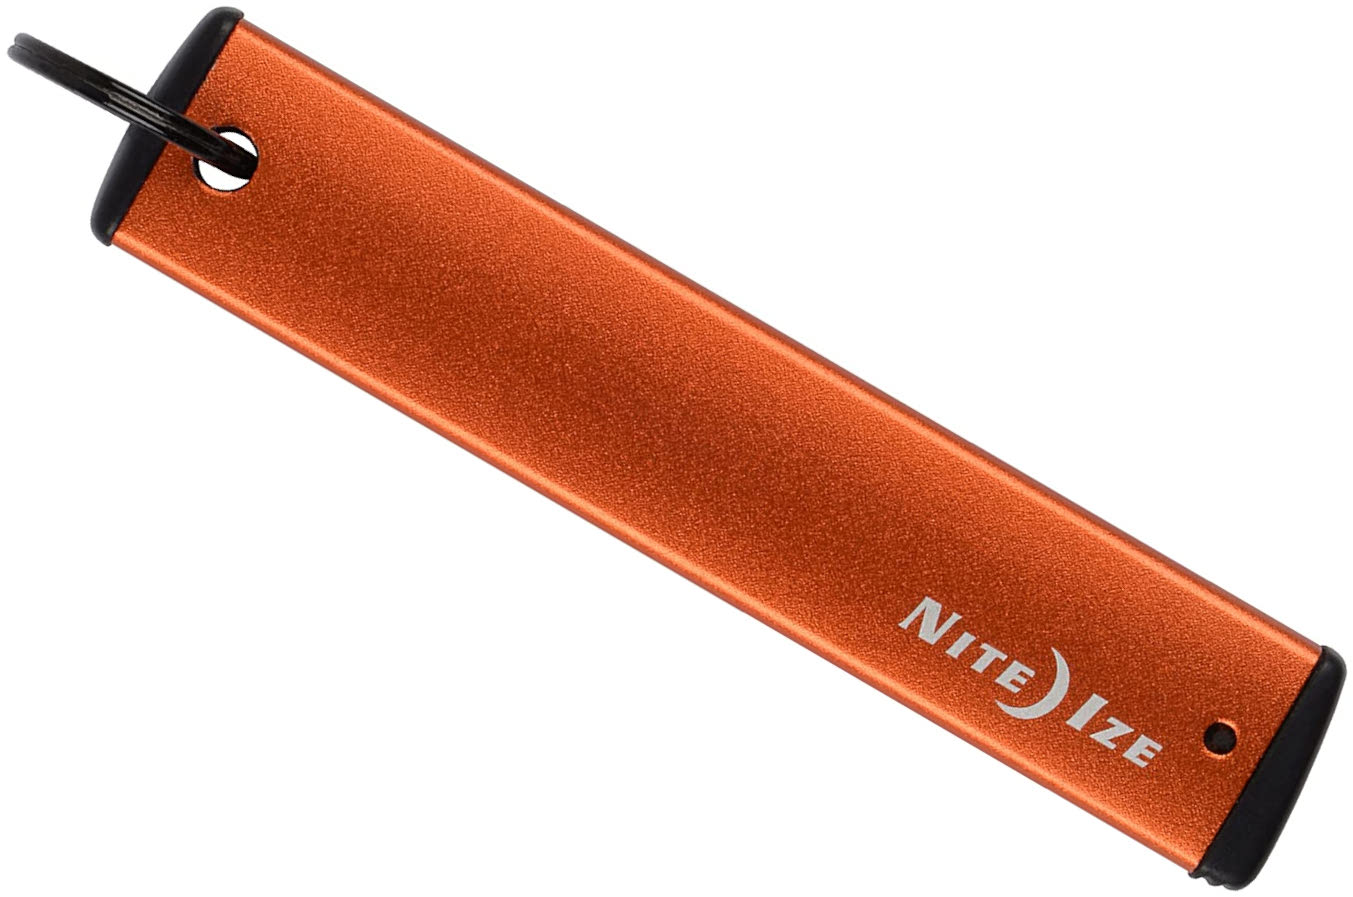 Брелок для ключей Nite Ize PowerKey Micro-USB PKYU-19-R7, оранжевый - фото